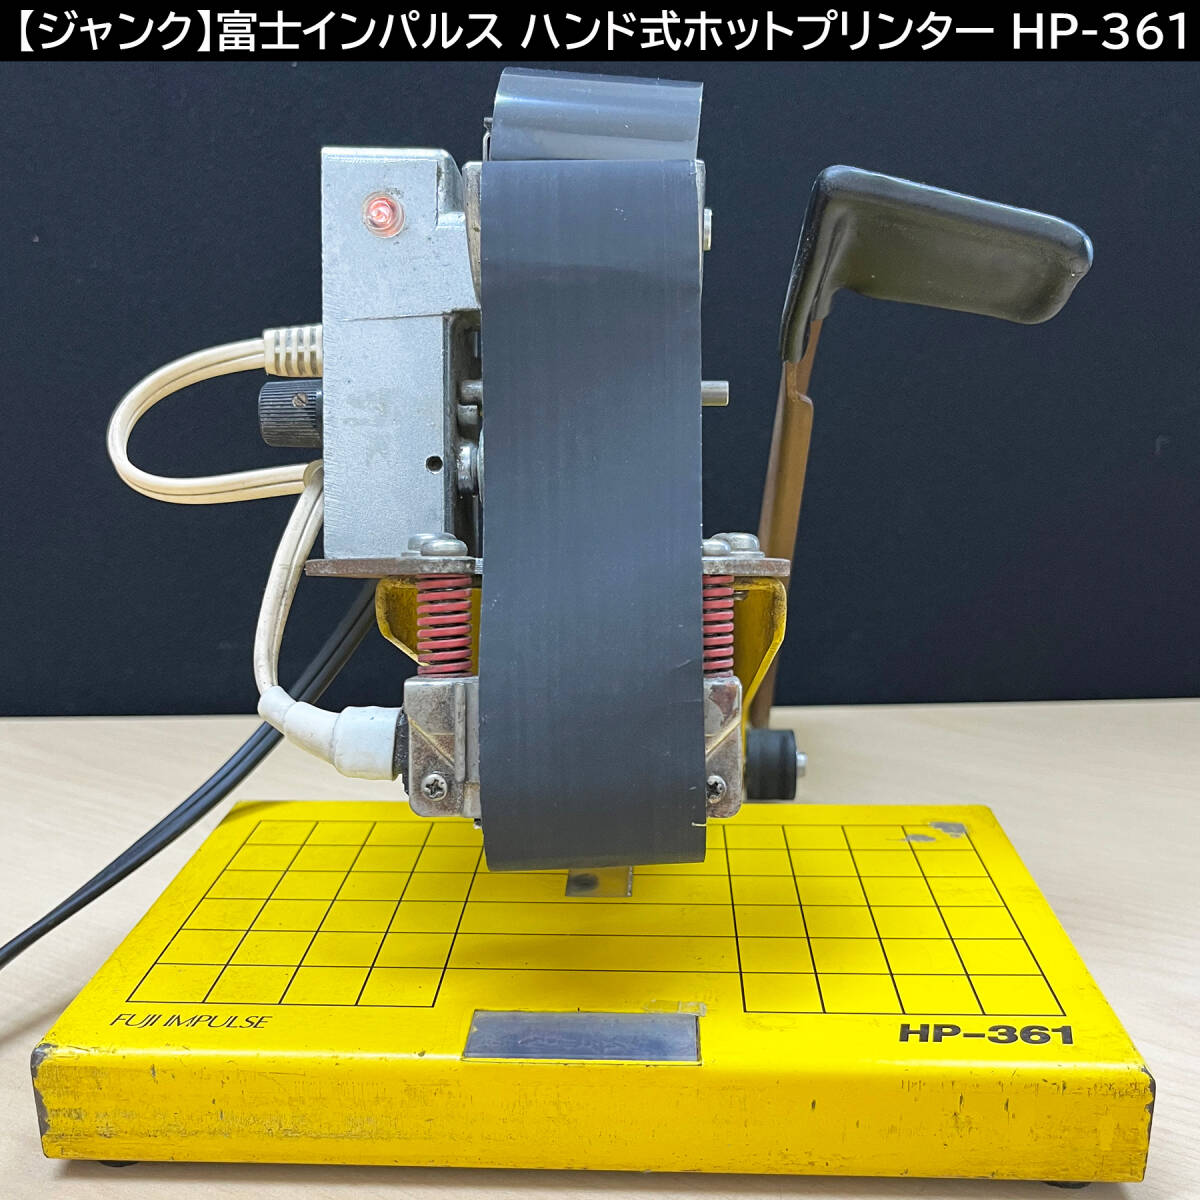 【ジャンク】富士インパルス ハンド式ホットプリンター HP-361 1列印字_画像1